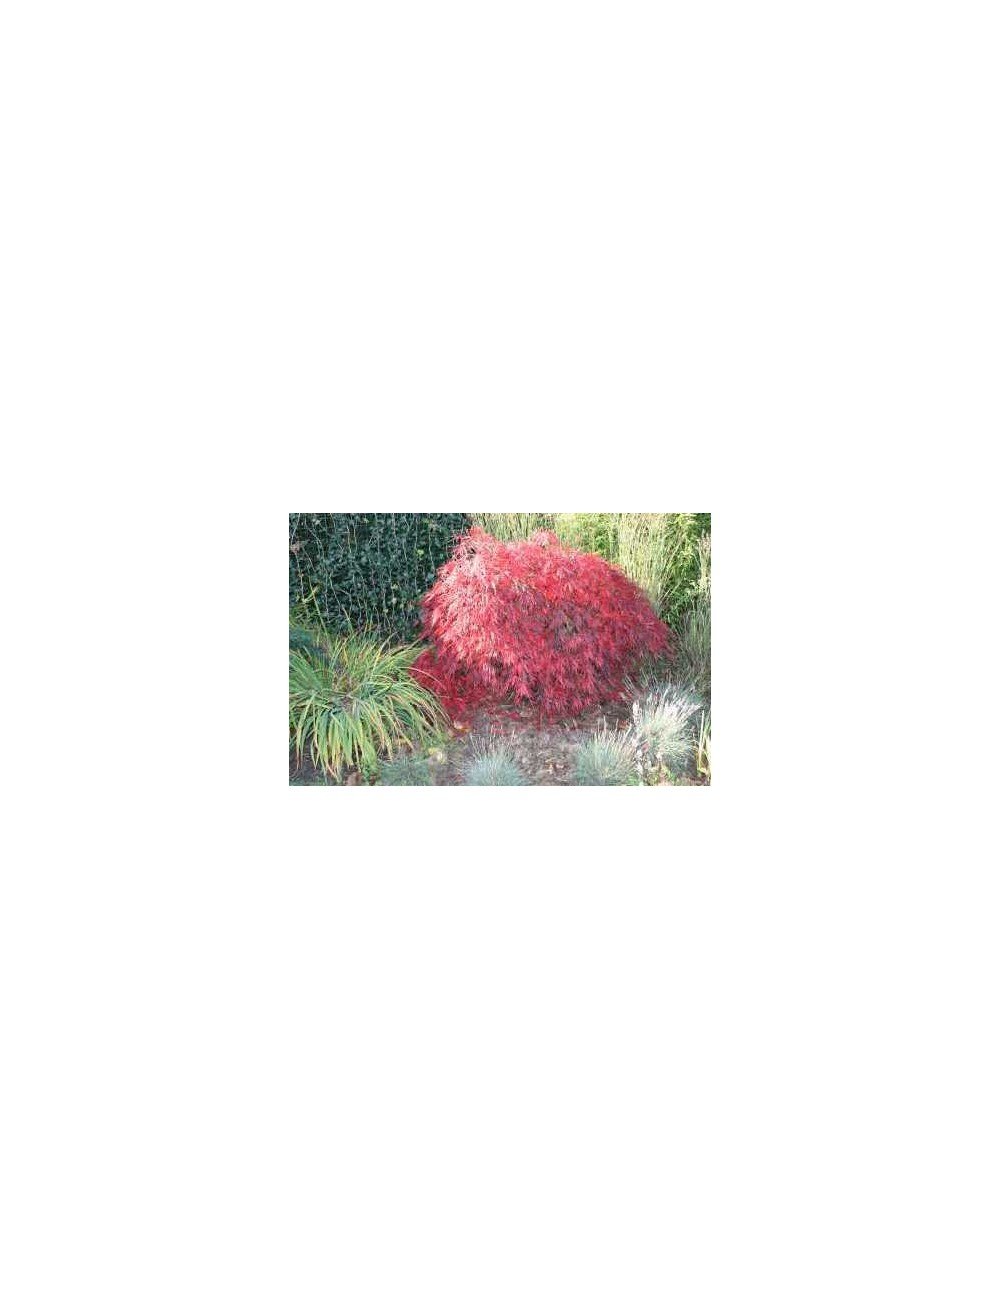 Acer Palmatum Dissectum Stella rossa